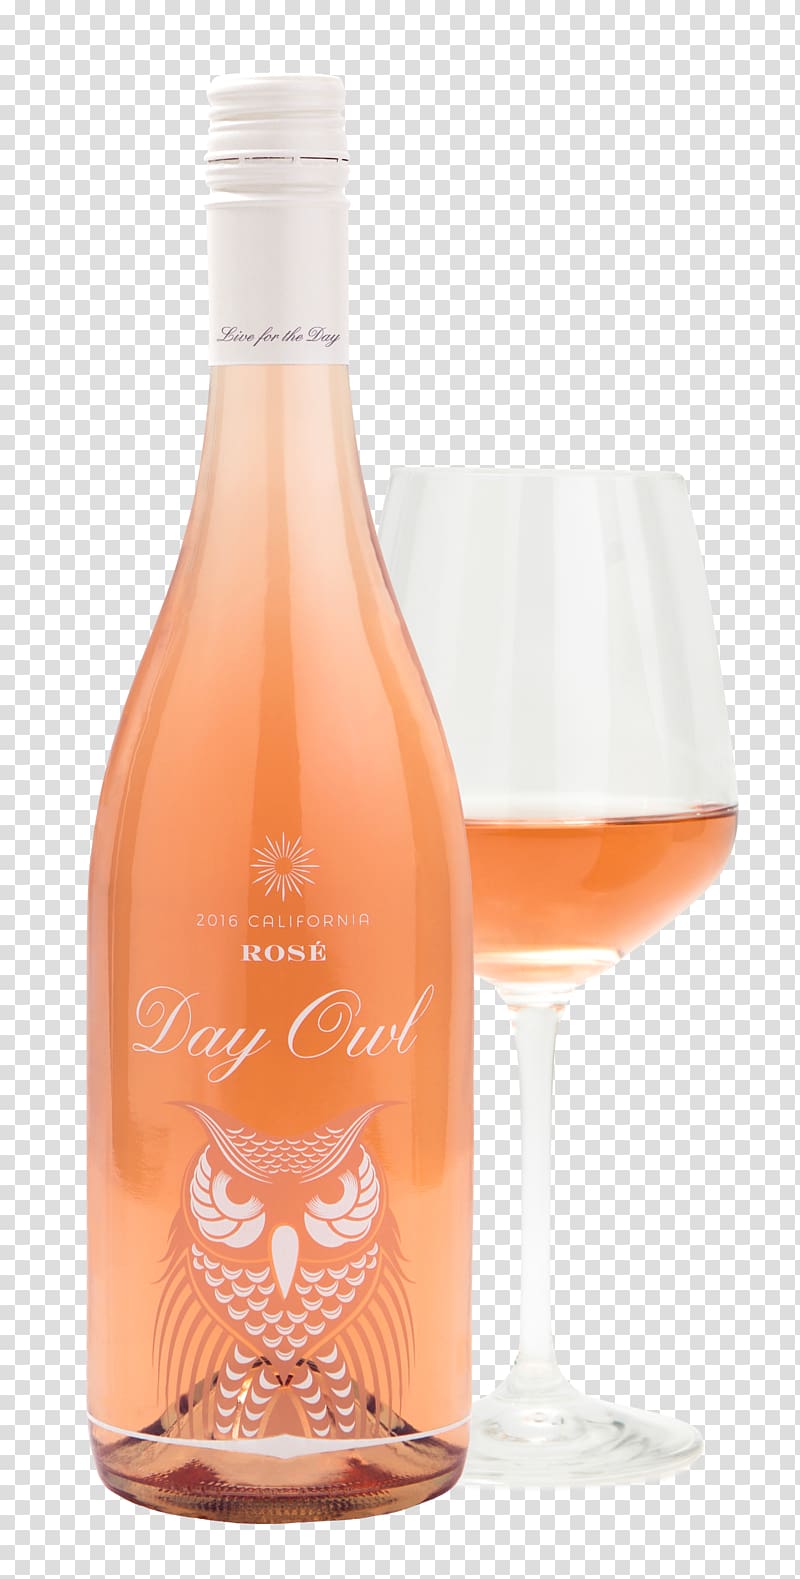 Rosé Wine glass Bottle Distilled beverage, rose transparent background PNG clipart